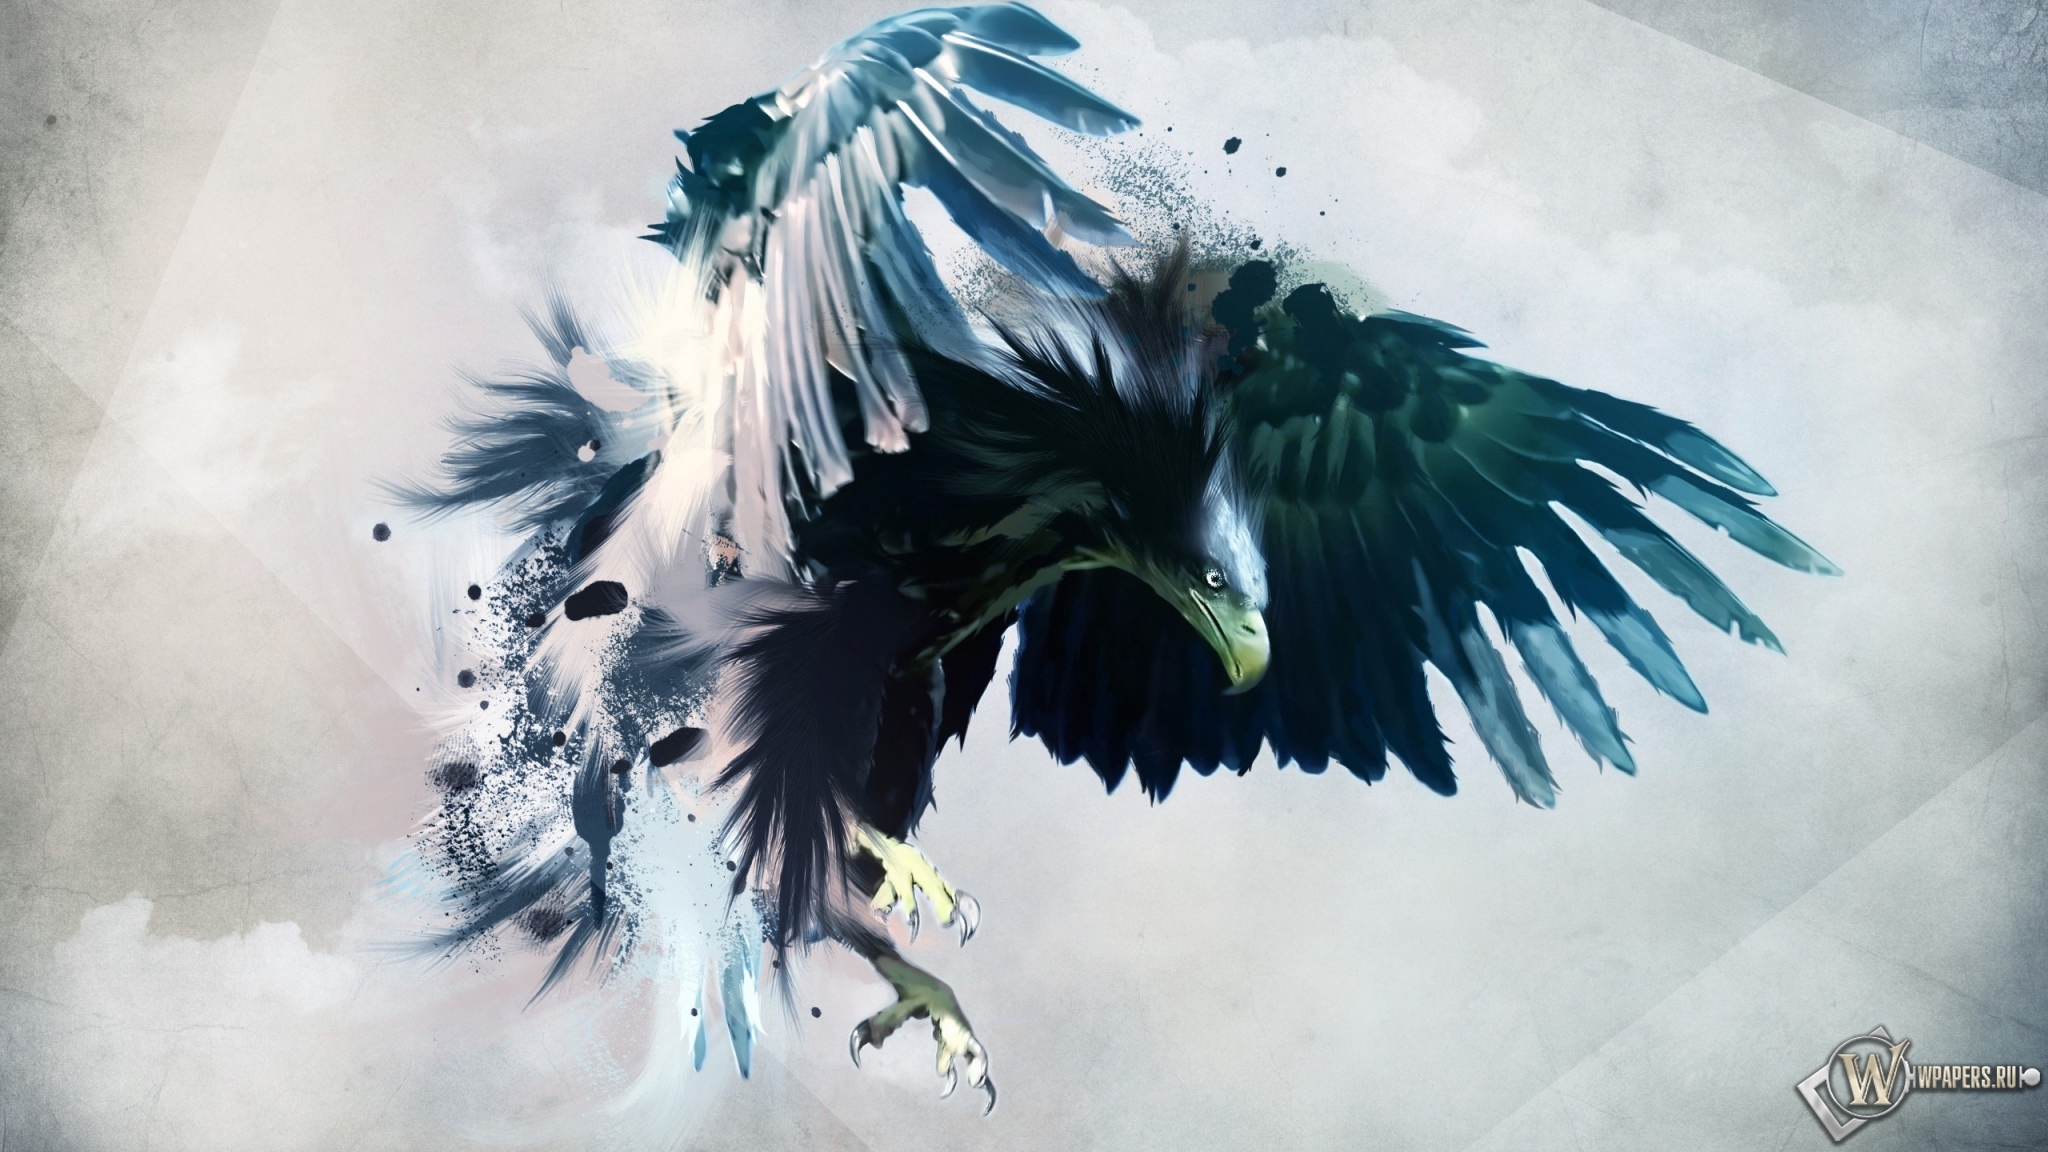 Artistic eagle 2048x1152